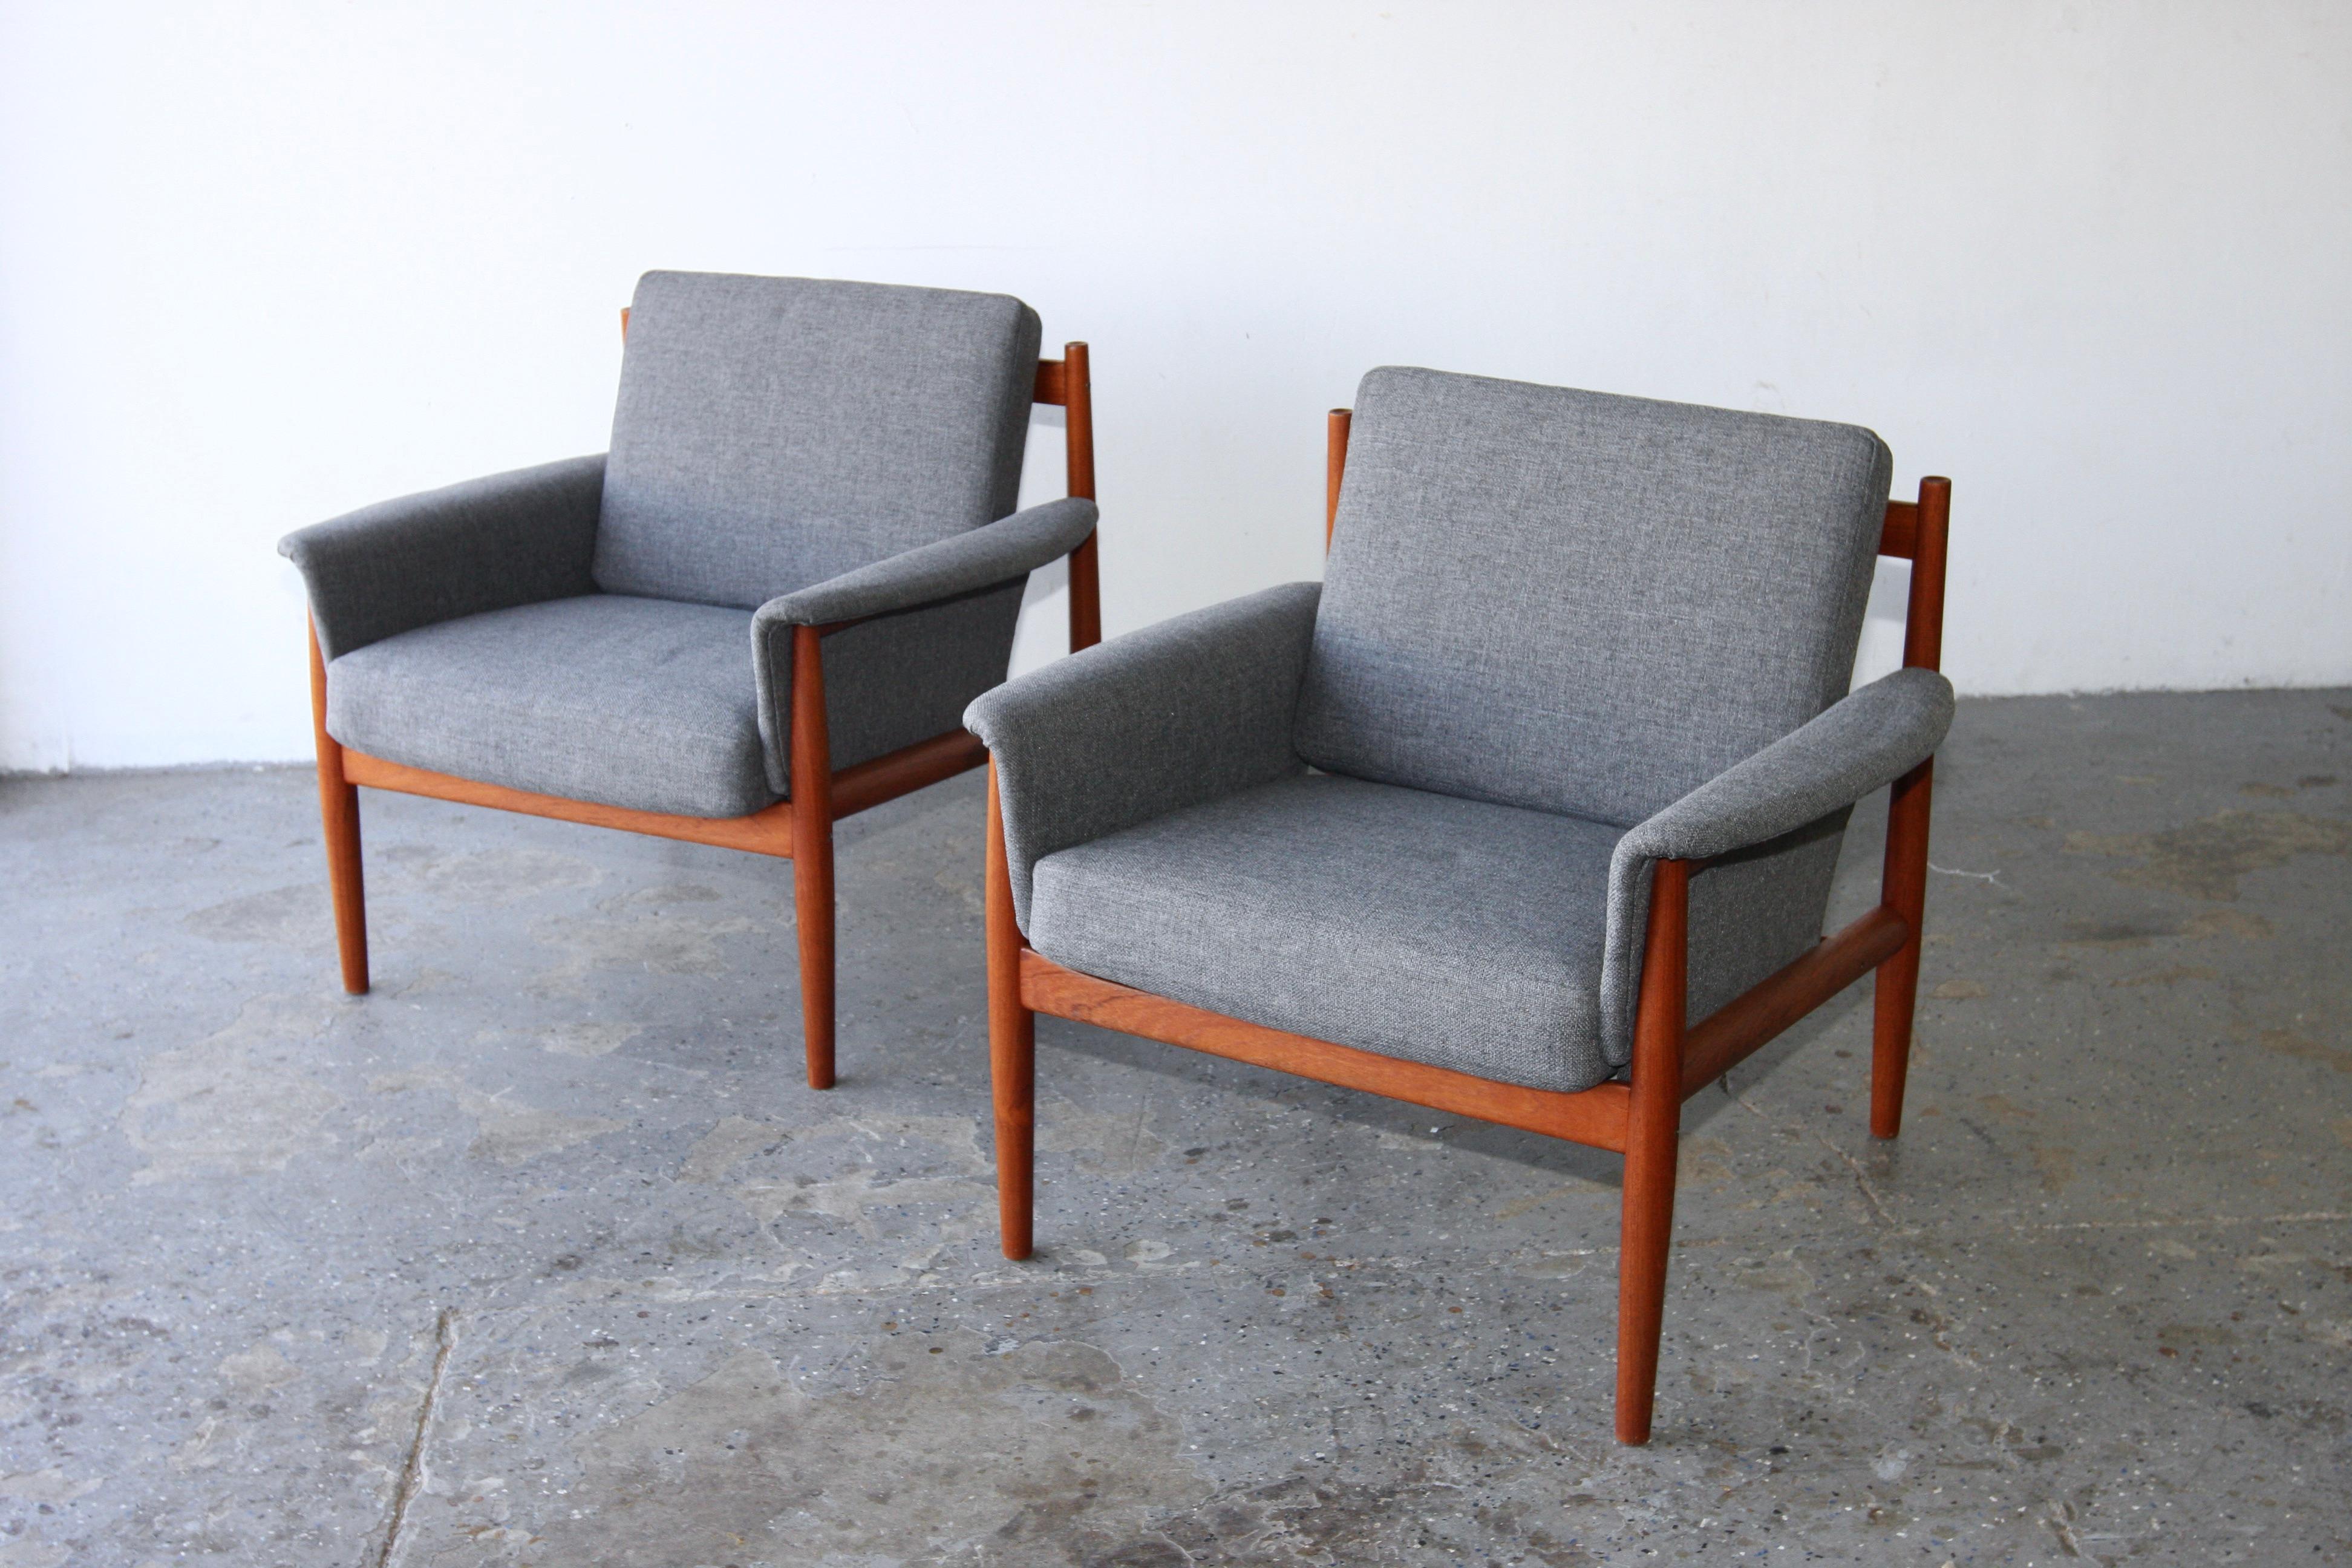 Wunderschöner moderner dänischer Loungesessel aus Teakholz von Grete Jalk. 1962 für France und Söhne entworfen. Der Stuhl hat gepolsterte Seiten, die den Sitz umschließen und auf Armlehnen ruhen. Geschwungene Rückenlehne und wunderschöne Details wie